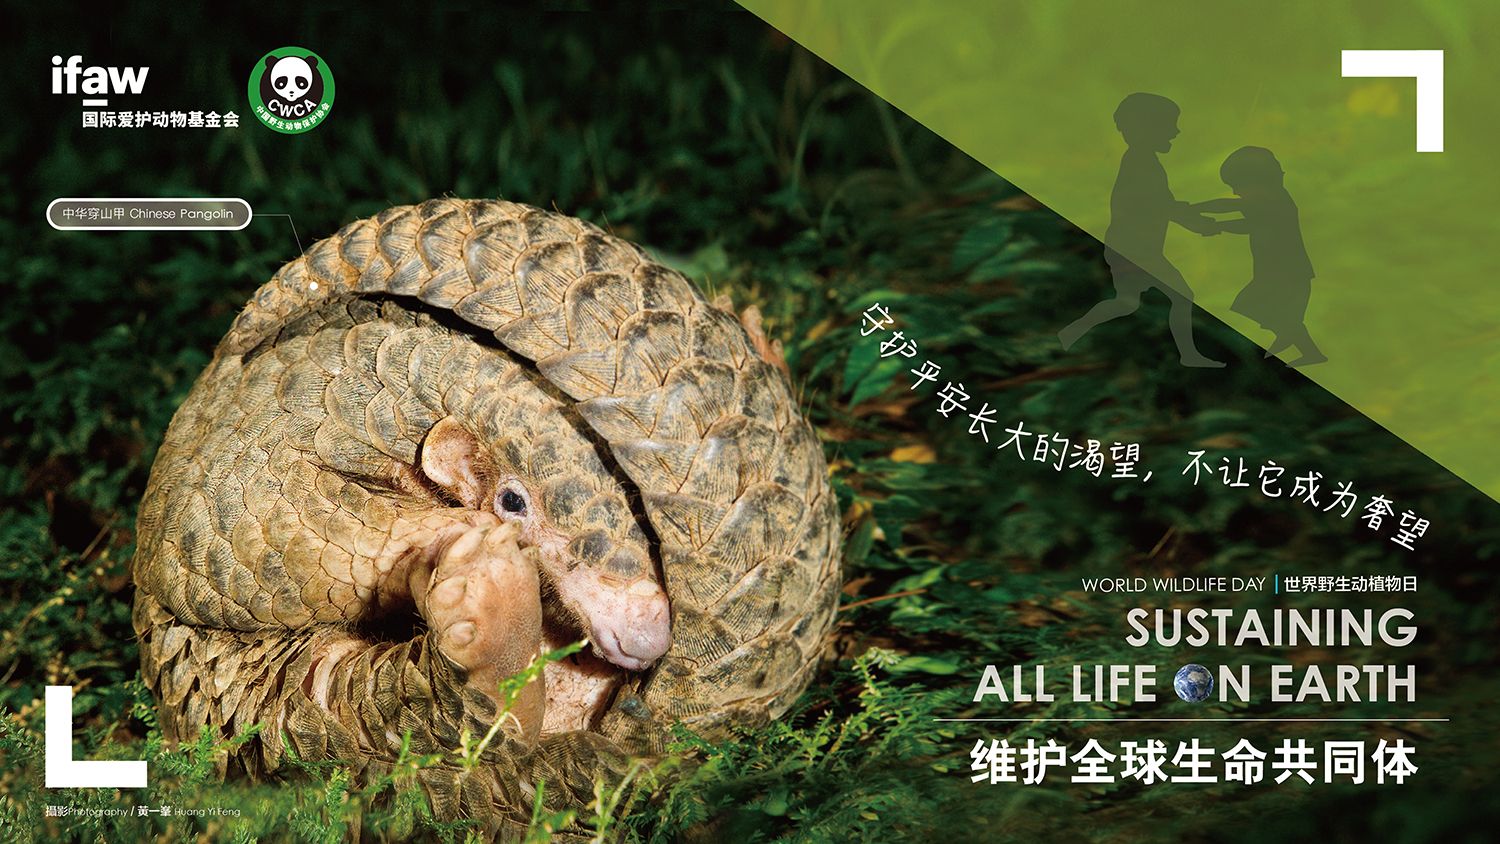 中国野生动物保护协会组织开展2020年世界野生动植物日主题宣传活动